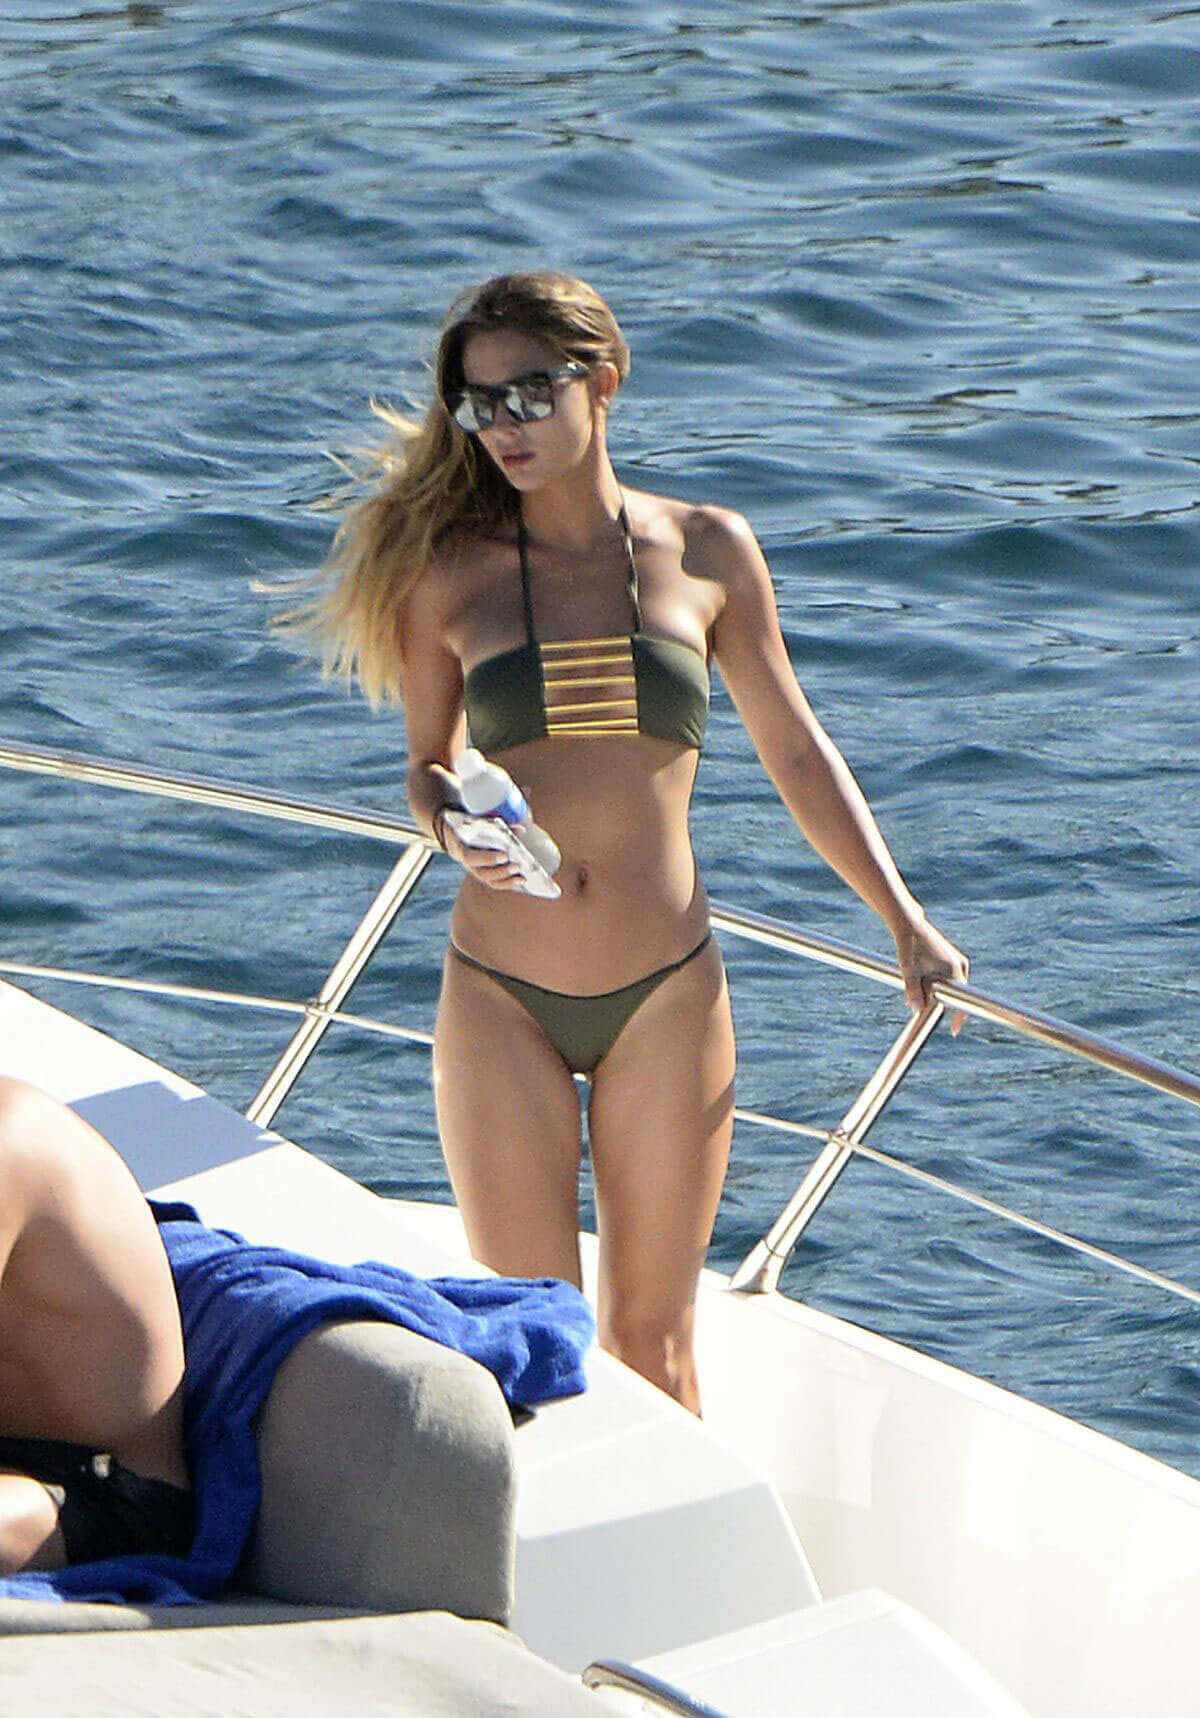 Mario Gotze with Ann-Kathrin Brommel in Bikini at a Yacht in Mallorca